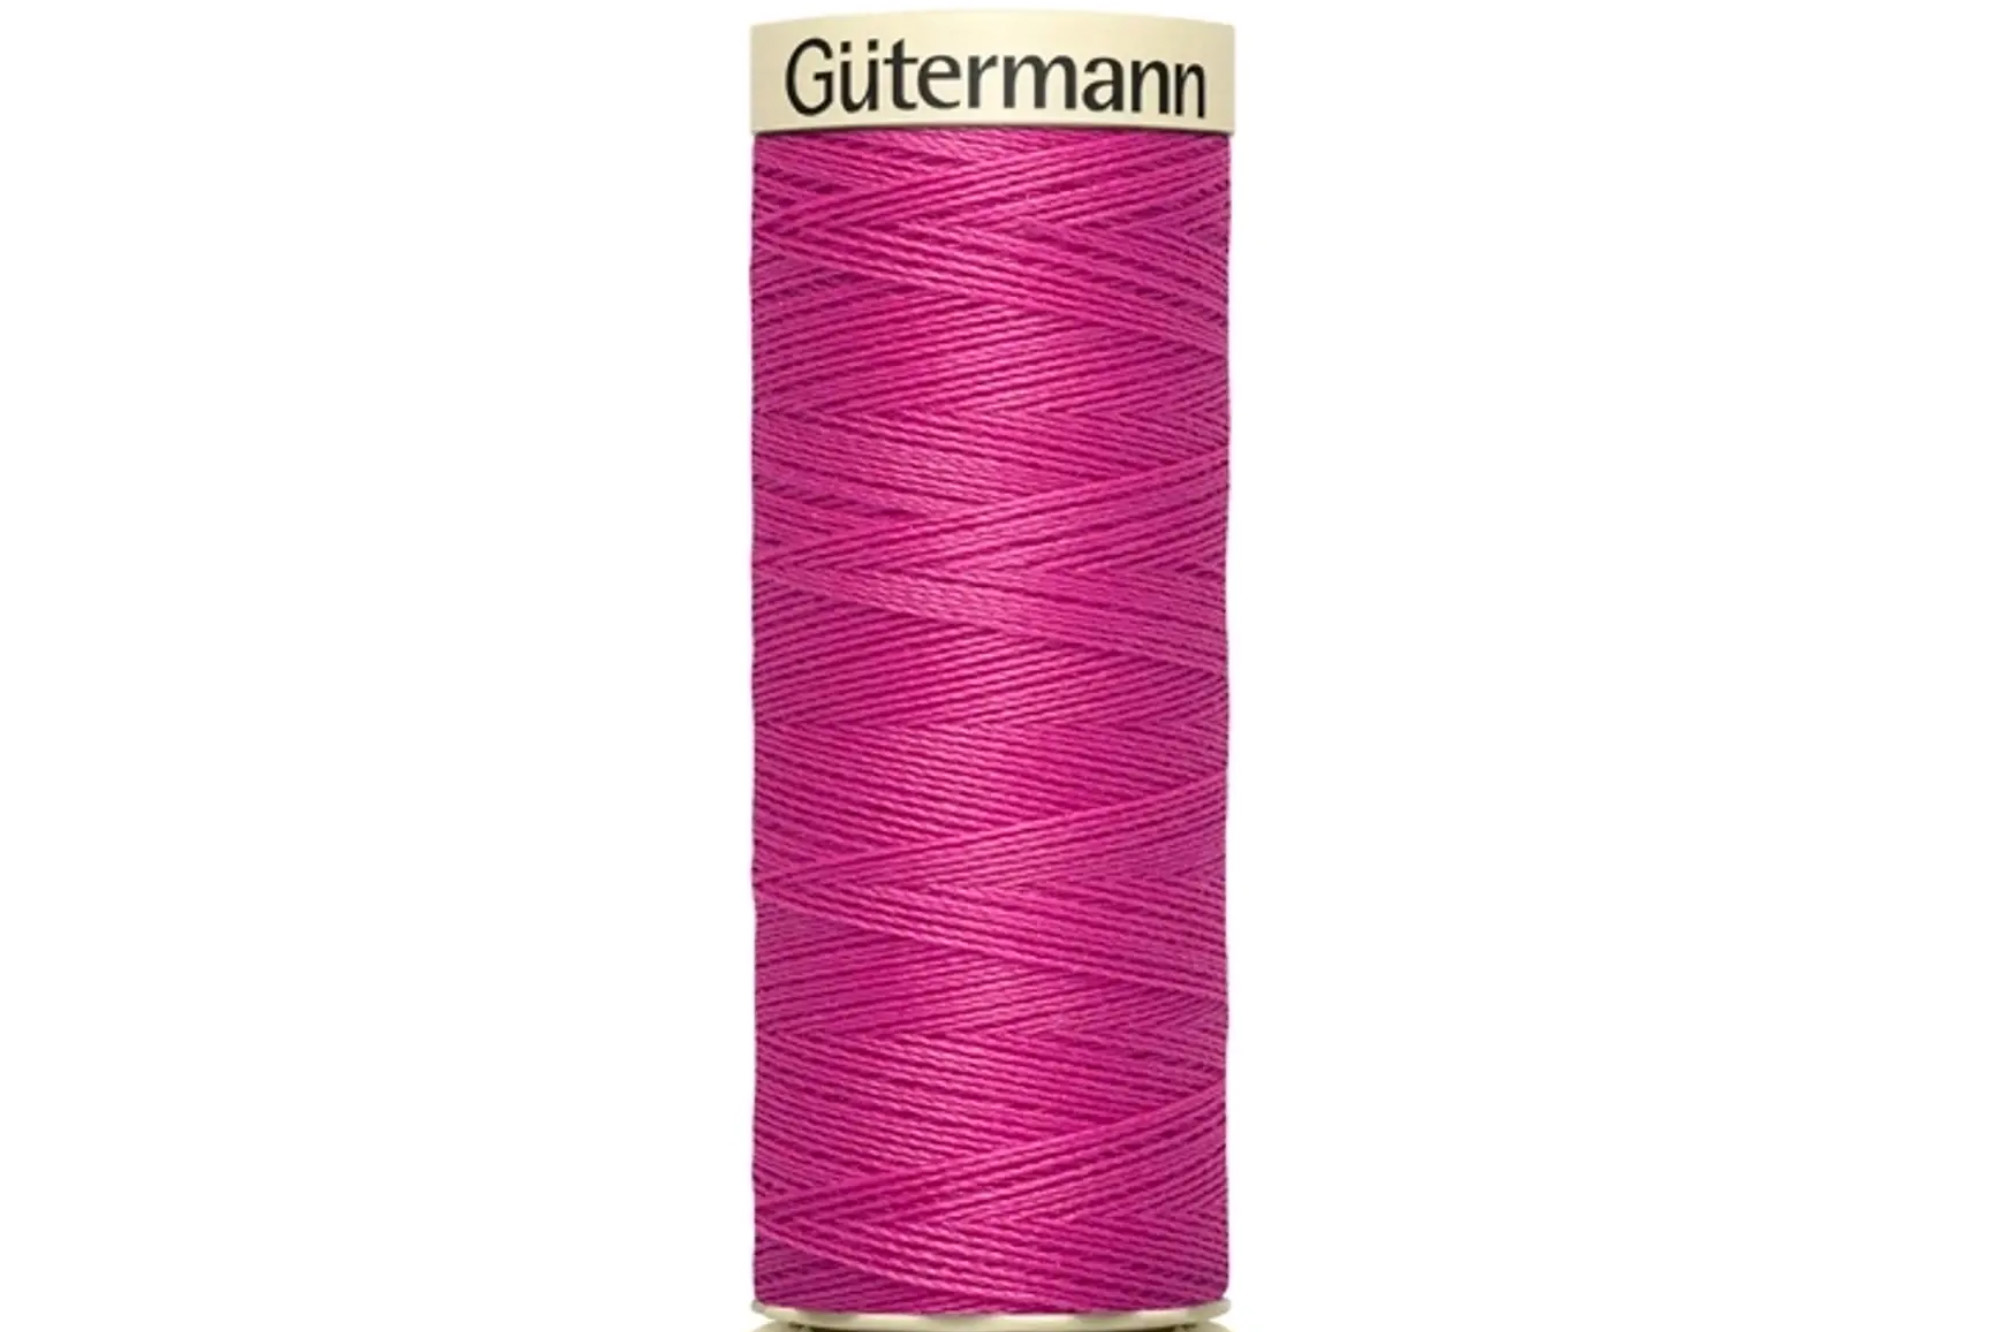 Gütermann Allesnähgarn 250m, pink